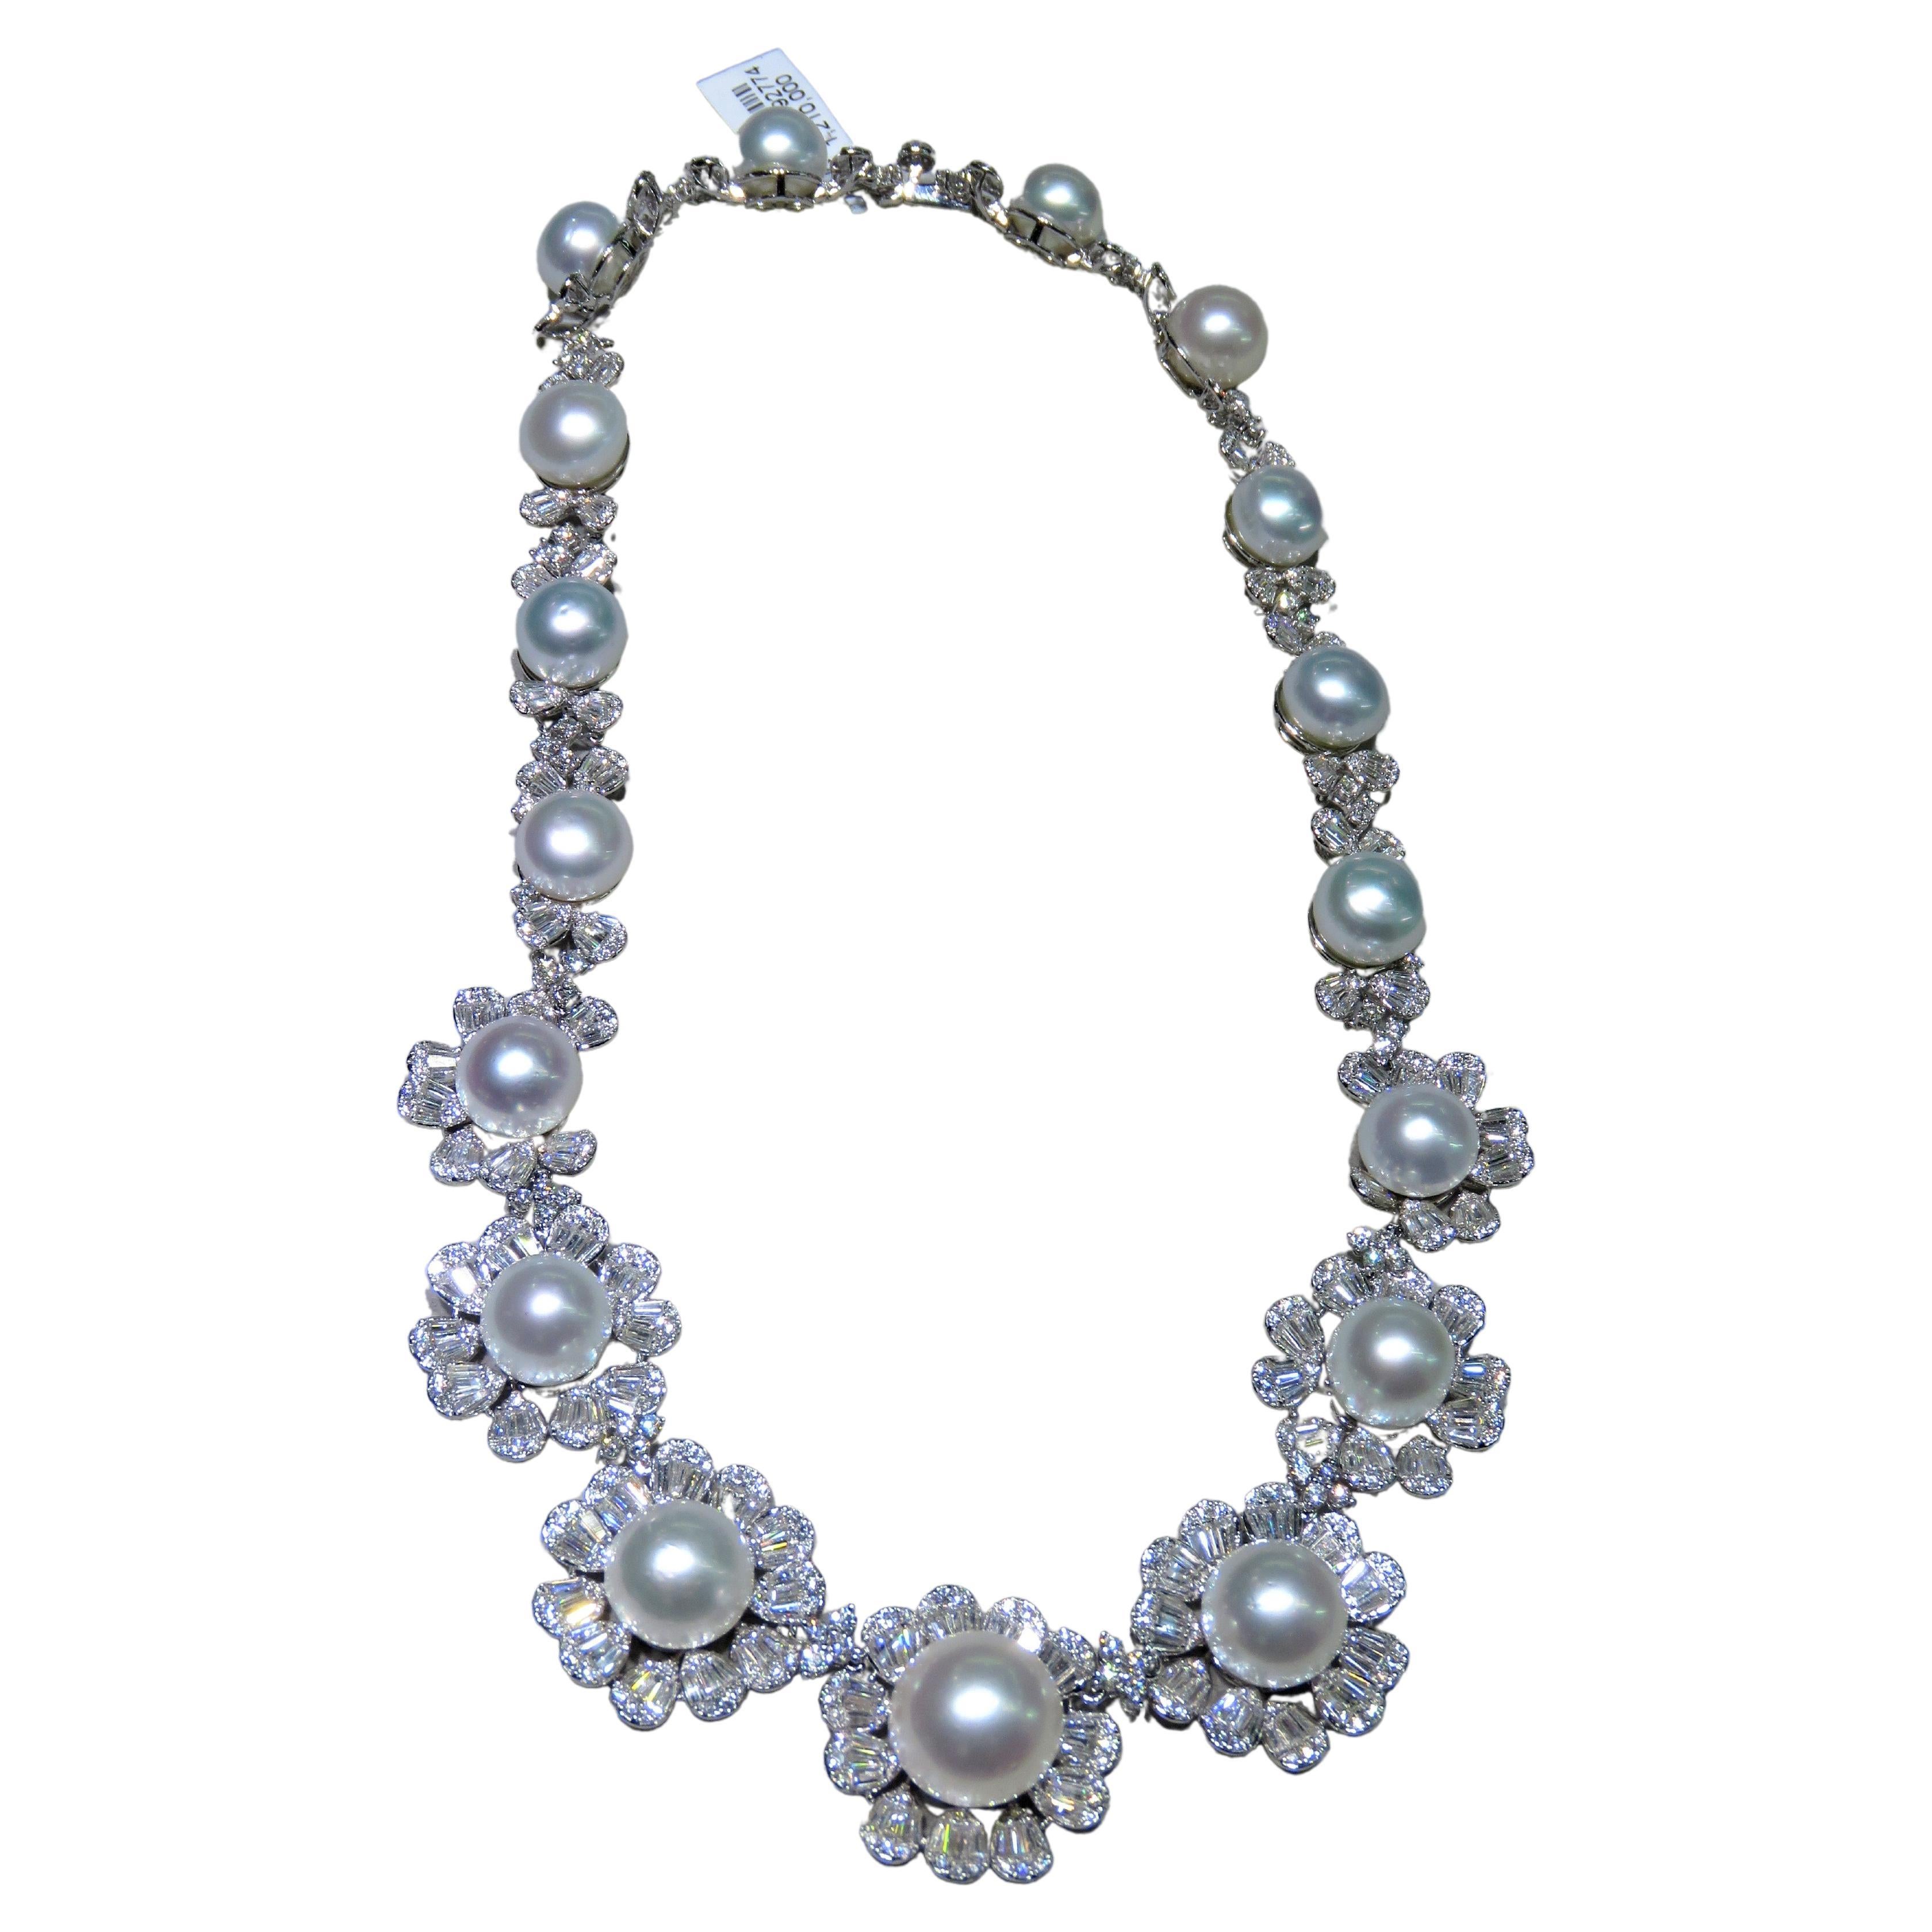 Seltene Lrg Südseeperlen-Blumen-Halskette, neu mit Diamanten, $120,000 18KT